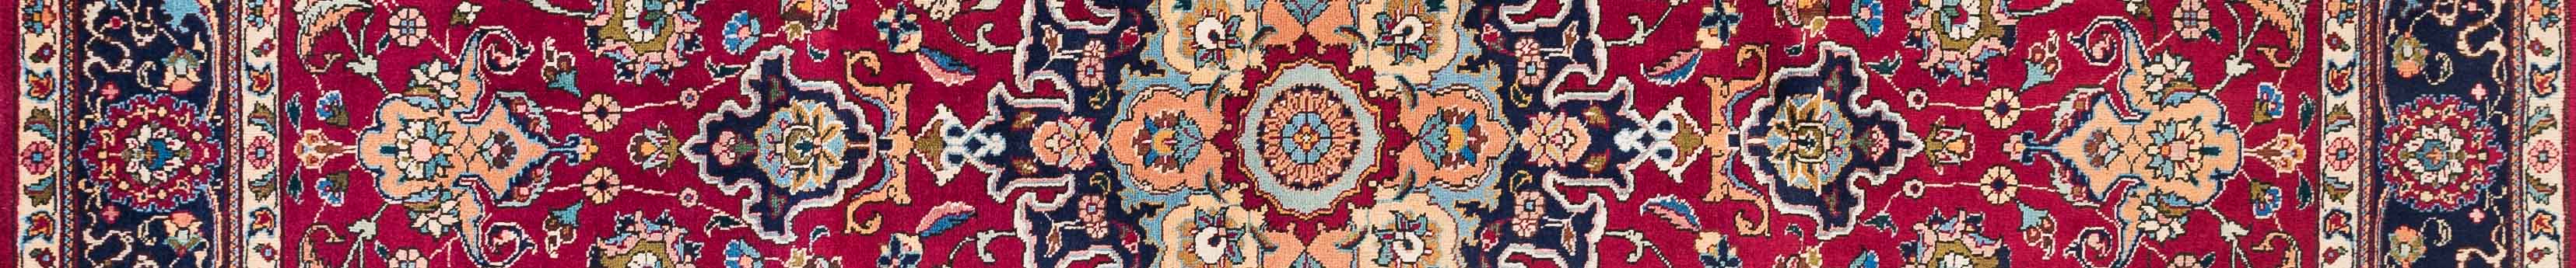 Tabriz Persian Carpet Rug N1Carpet Canada Montreal Tapis Persan 1390